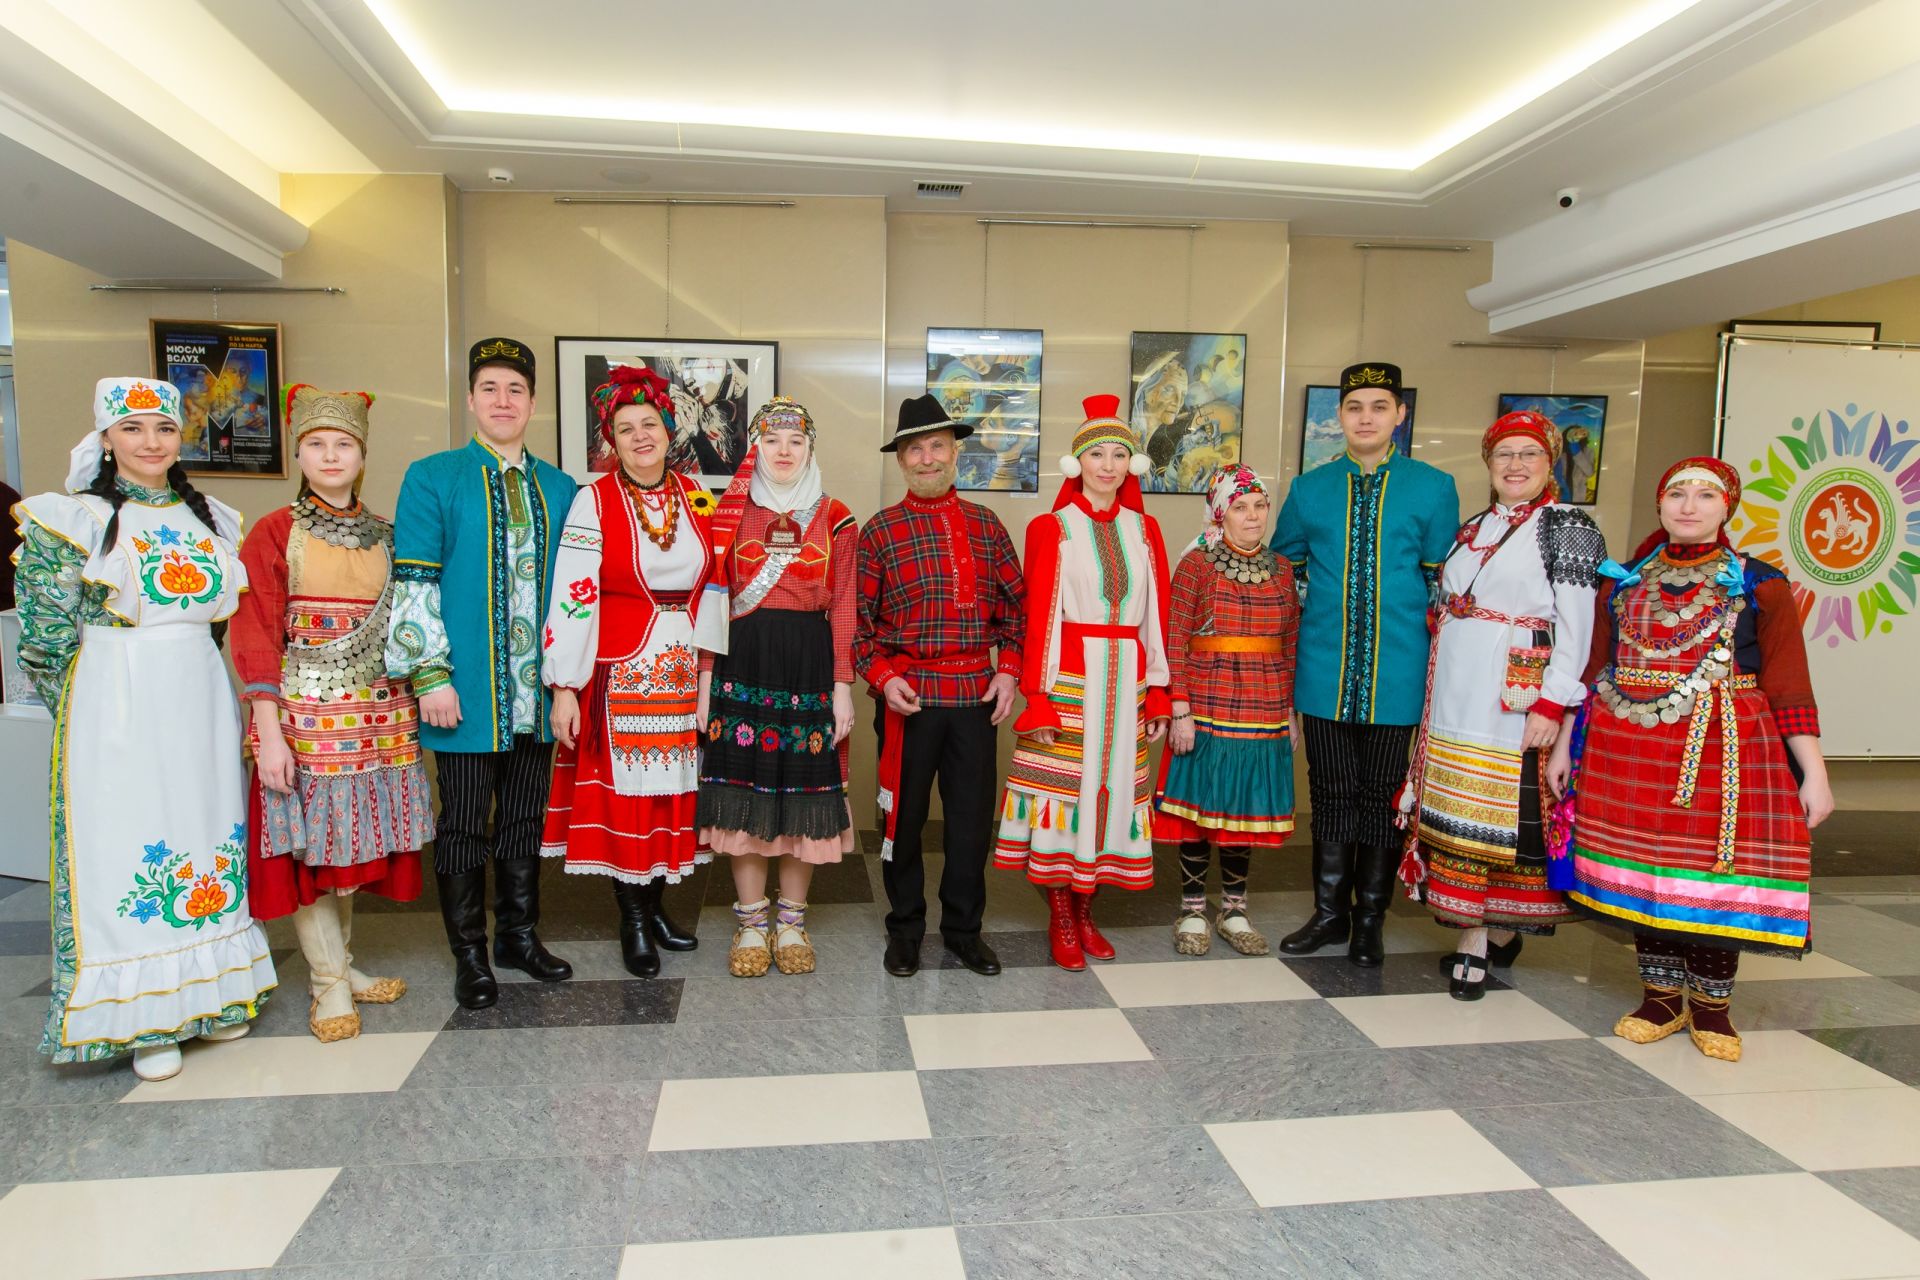 Нижнекамские кряшены выступили на открытии Года родных языков и народного единства в городе нефтехимиков